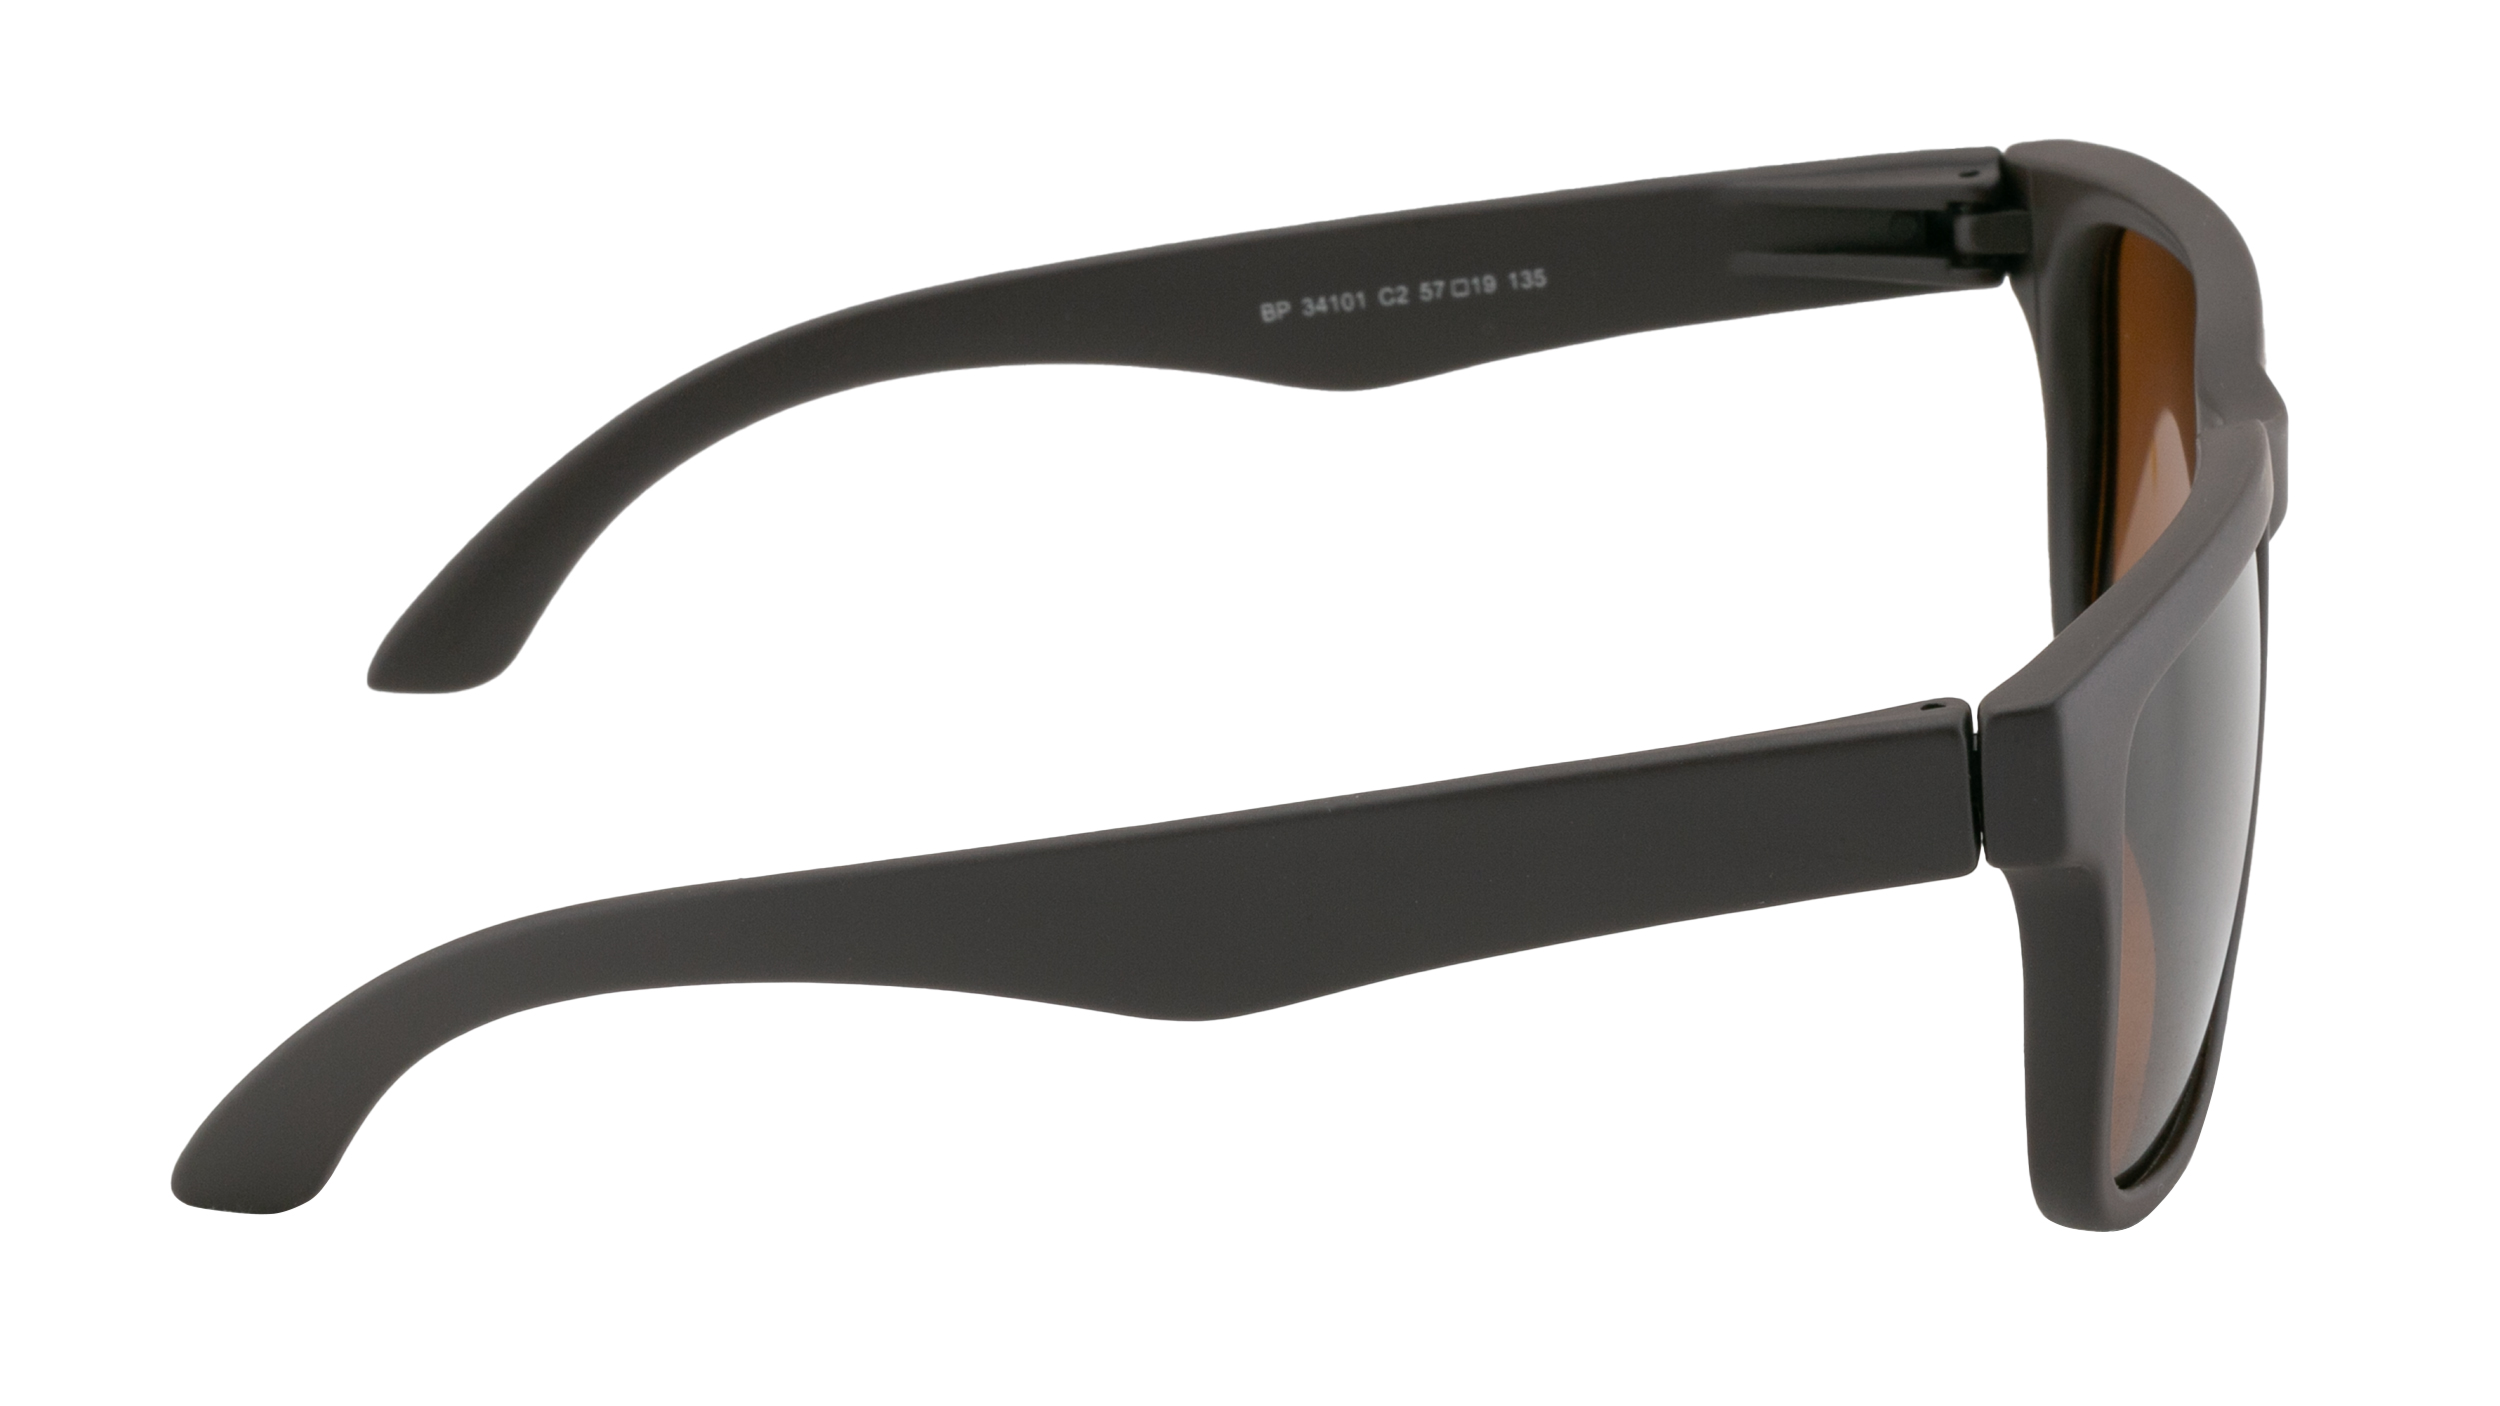 Солнцезащитные очки Jardin BP 34101-C2 - купить в интернет-магазине и салонах оптики «Счастливый взгляд»